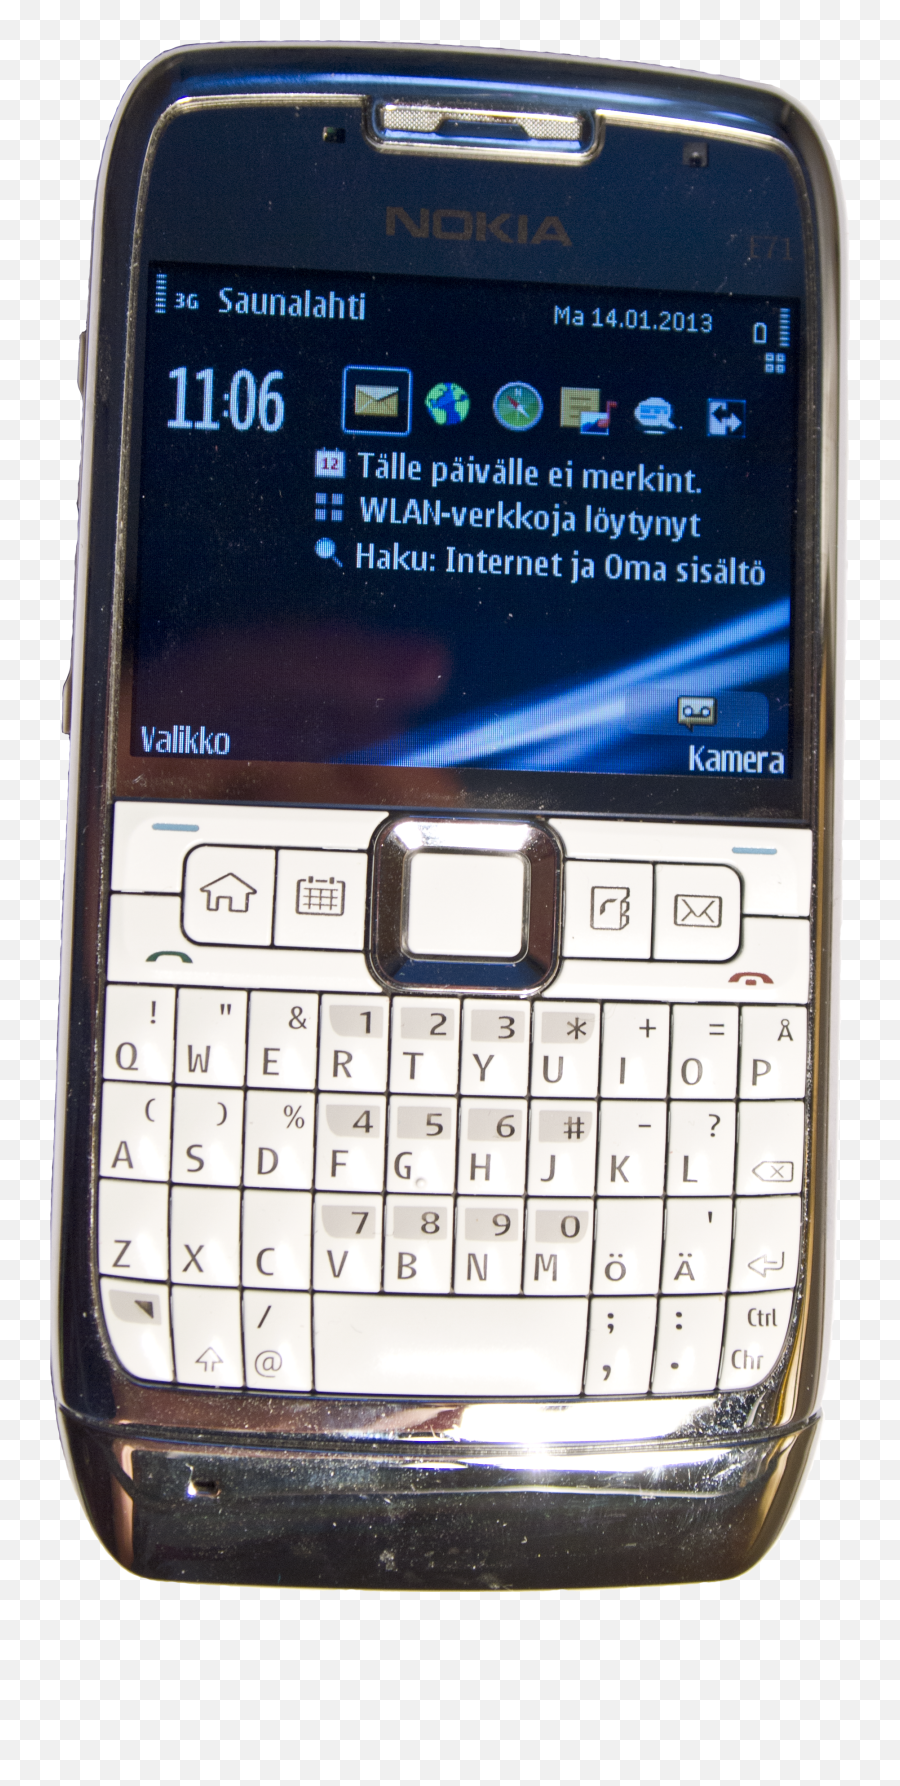 Nokia E71 Phone - Nokia E71 Dual Sim 2013 Png,Blue Phone Png